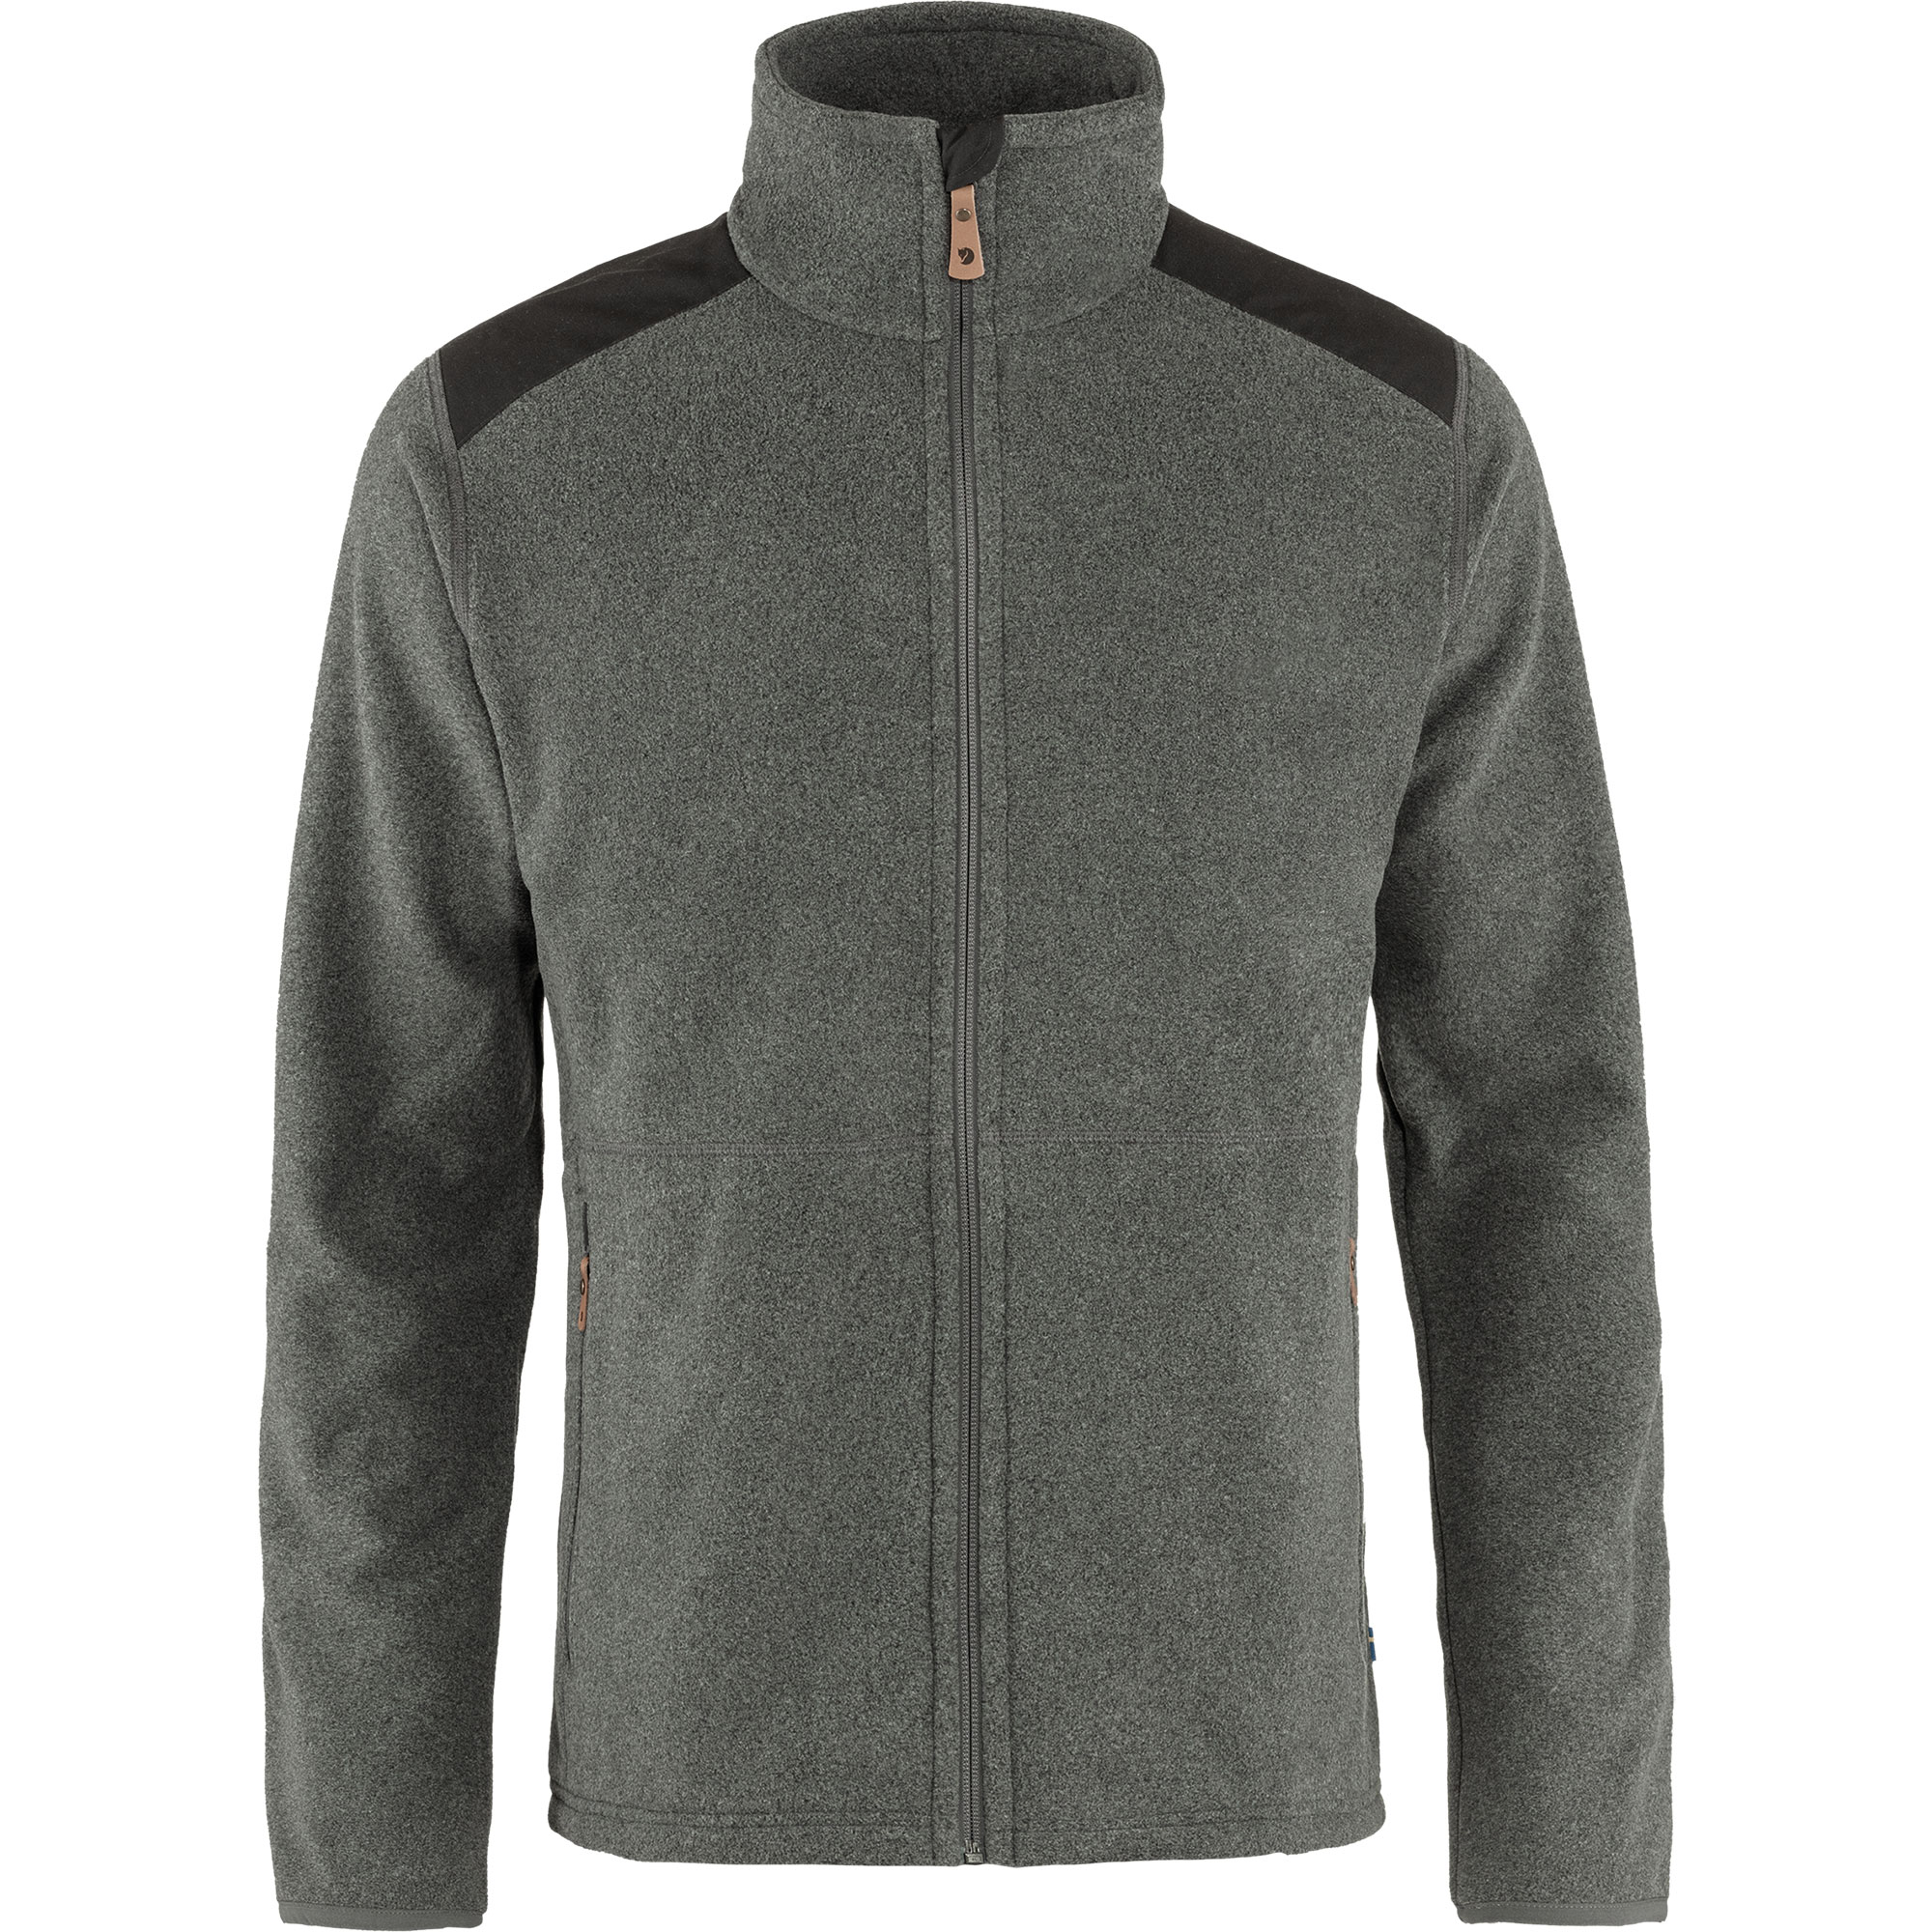 Fjällräven Sten fleece jacket | Recon Company